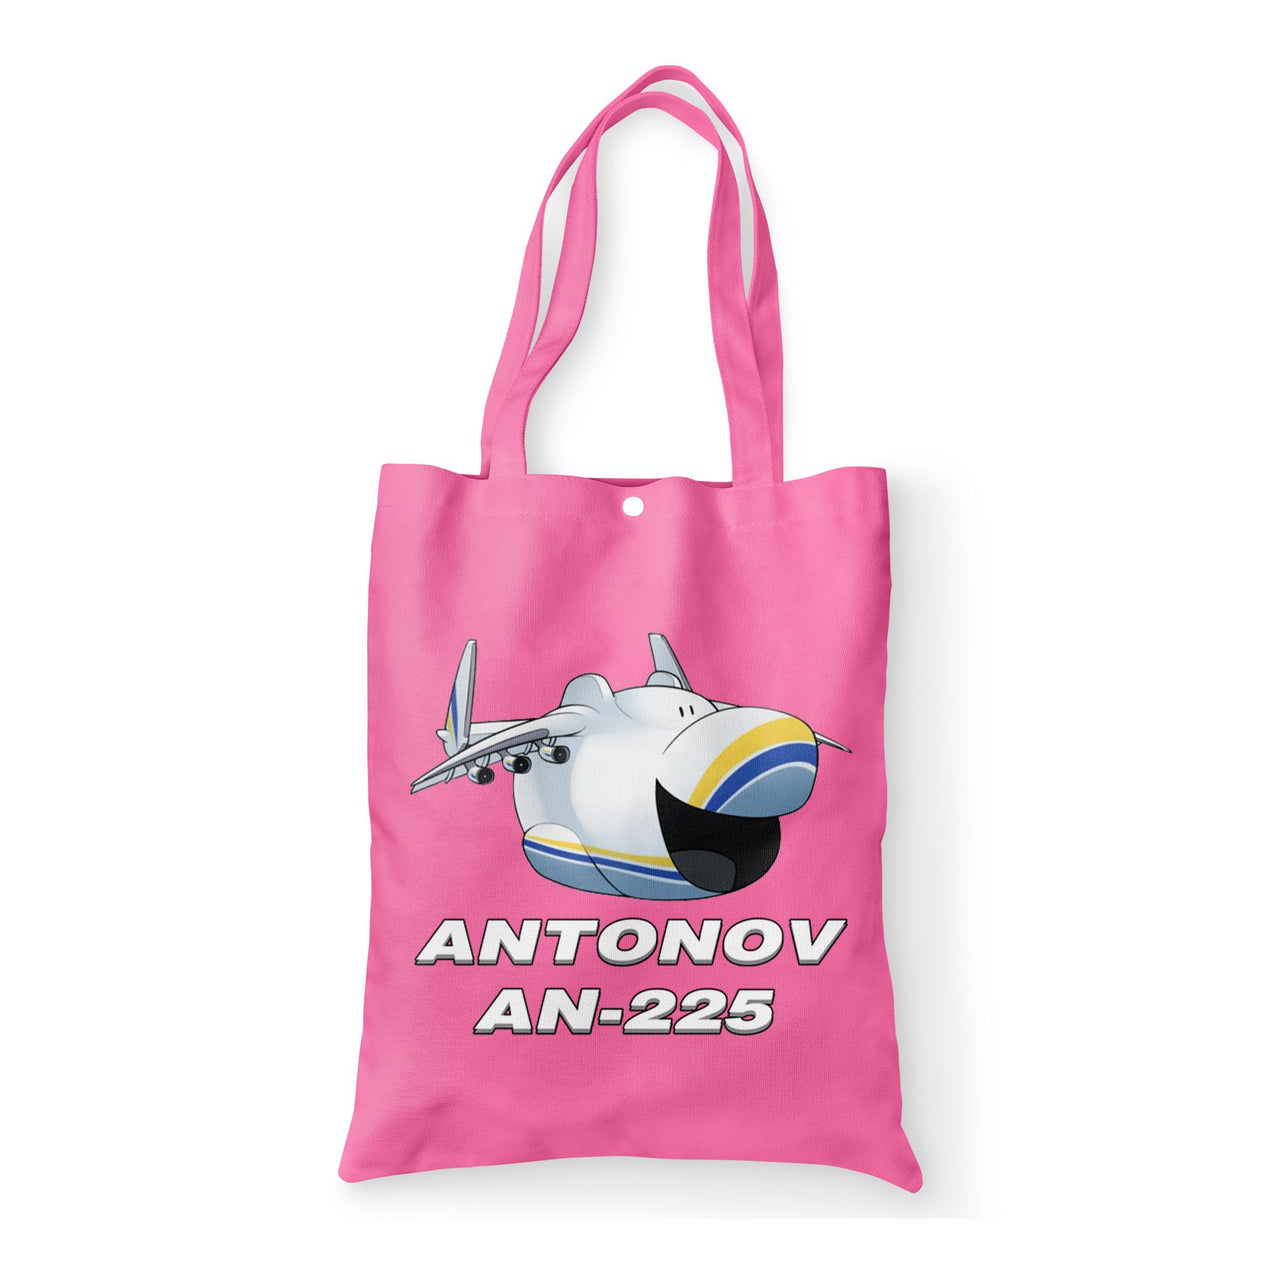 Antonov AN-225 (23) Designed Tote Bags